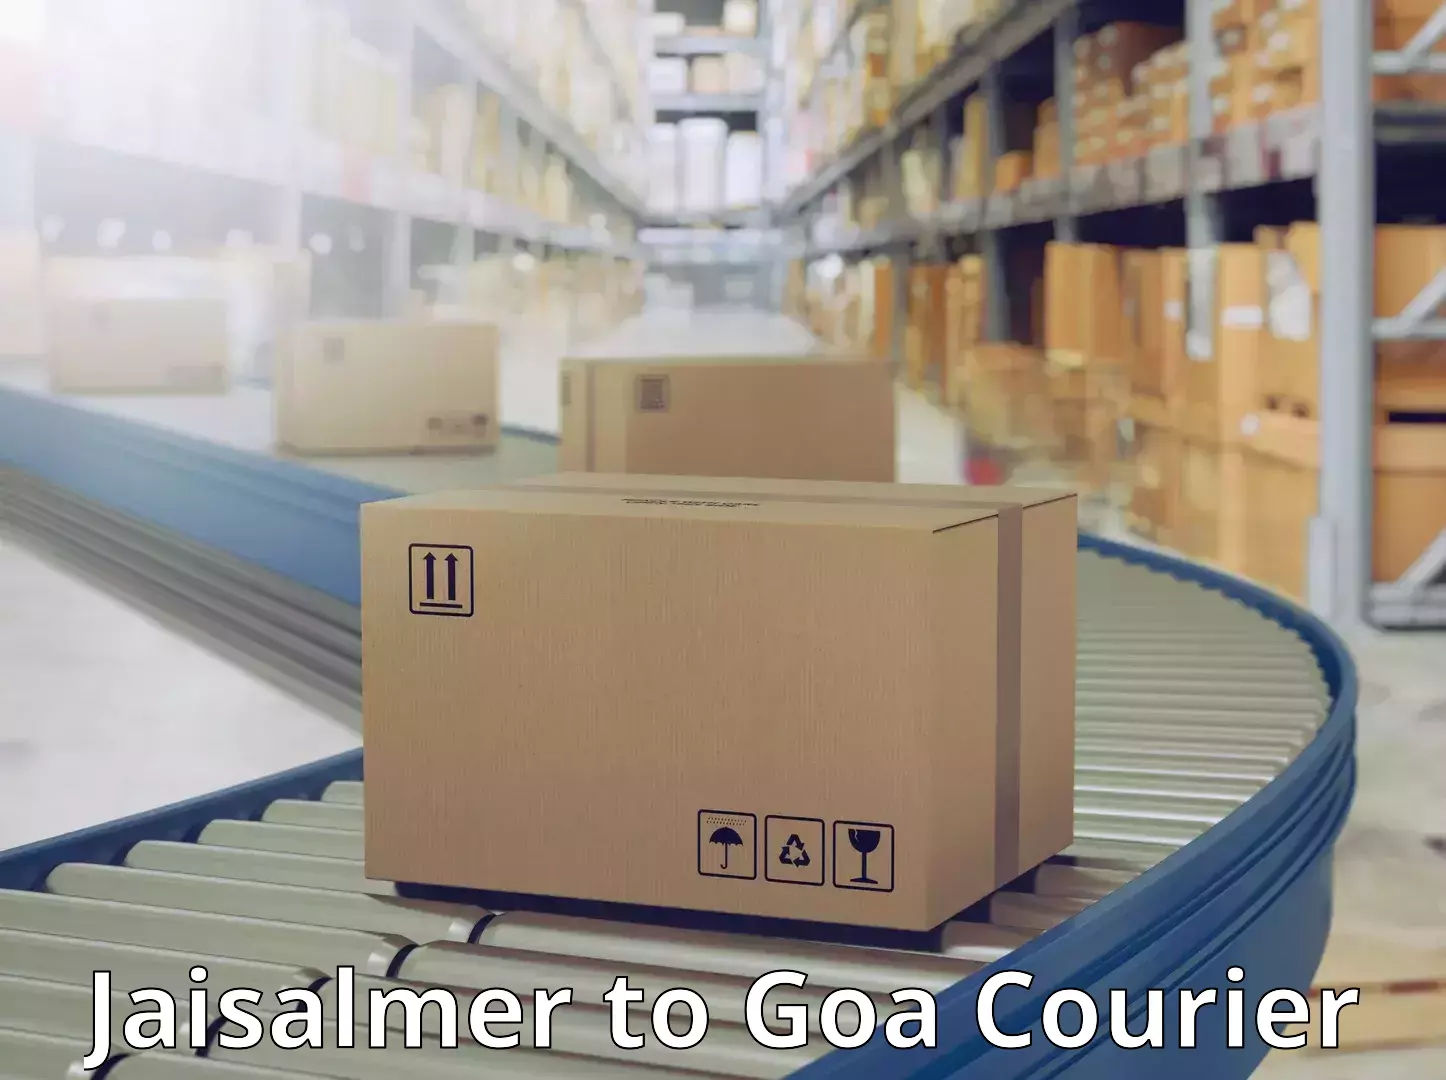 Customer-centric shipping Jaisalmer to NIT Goa